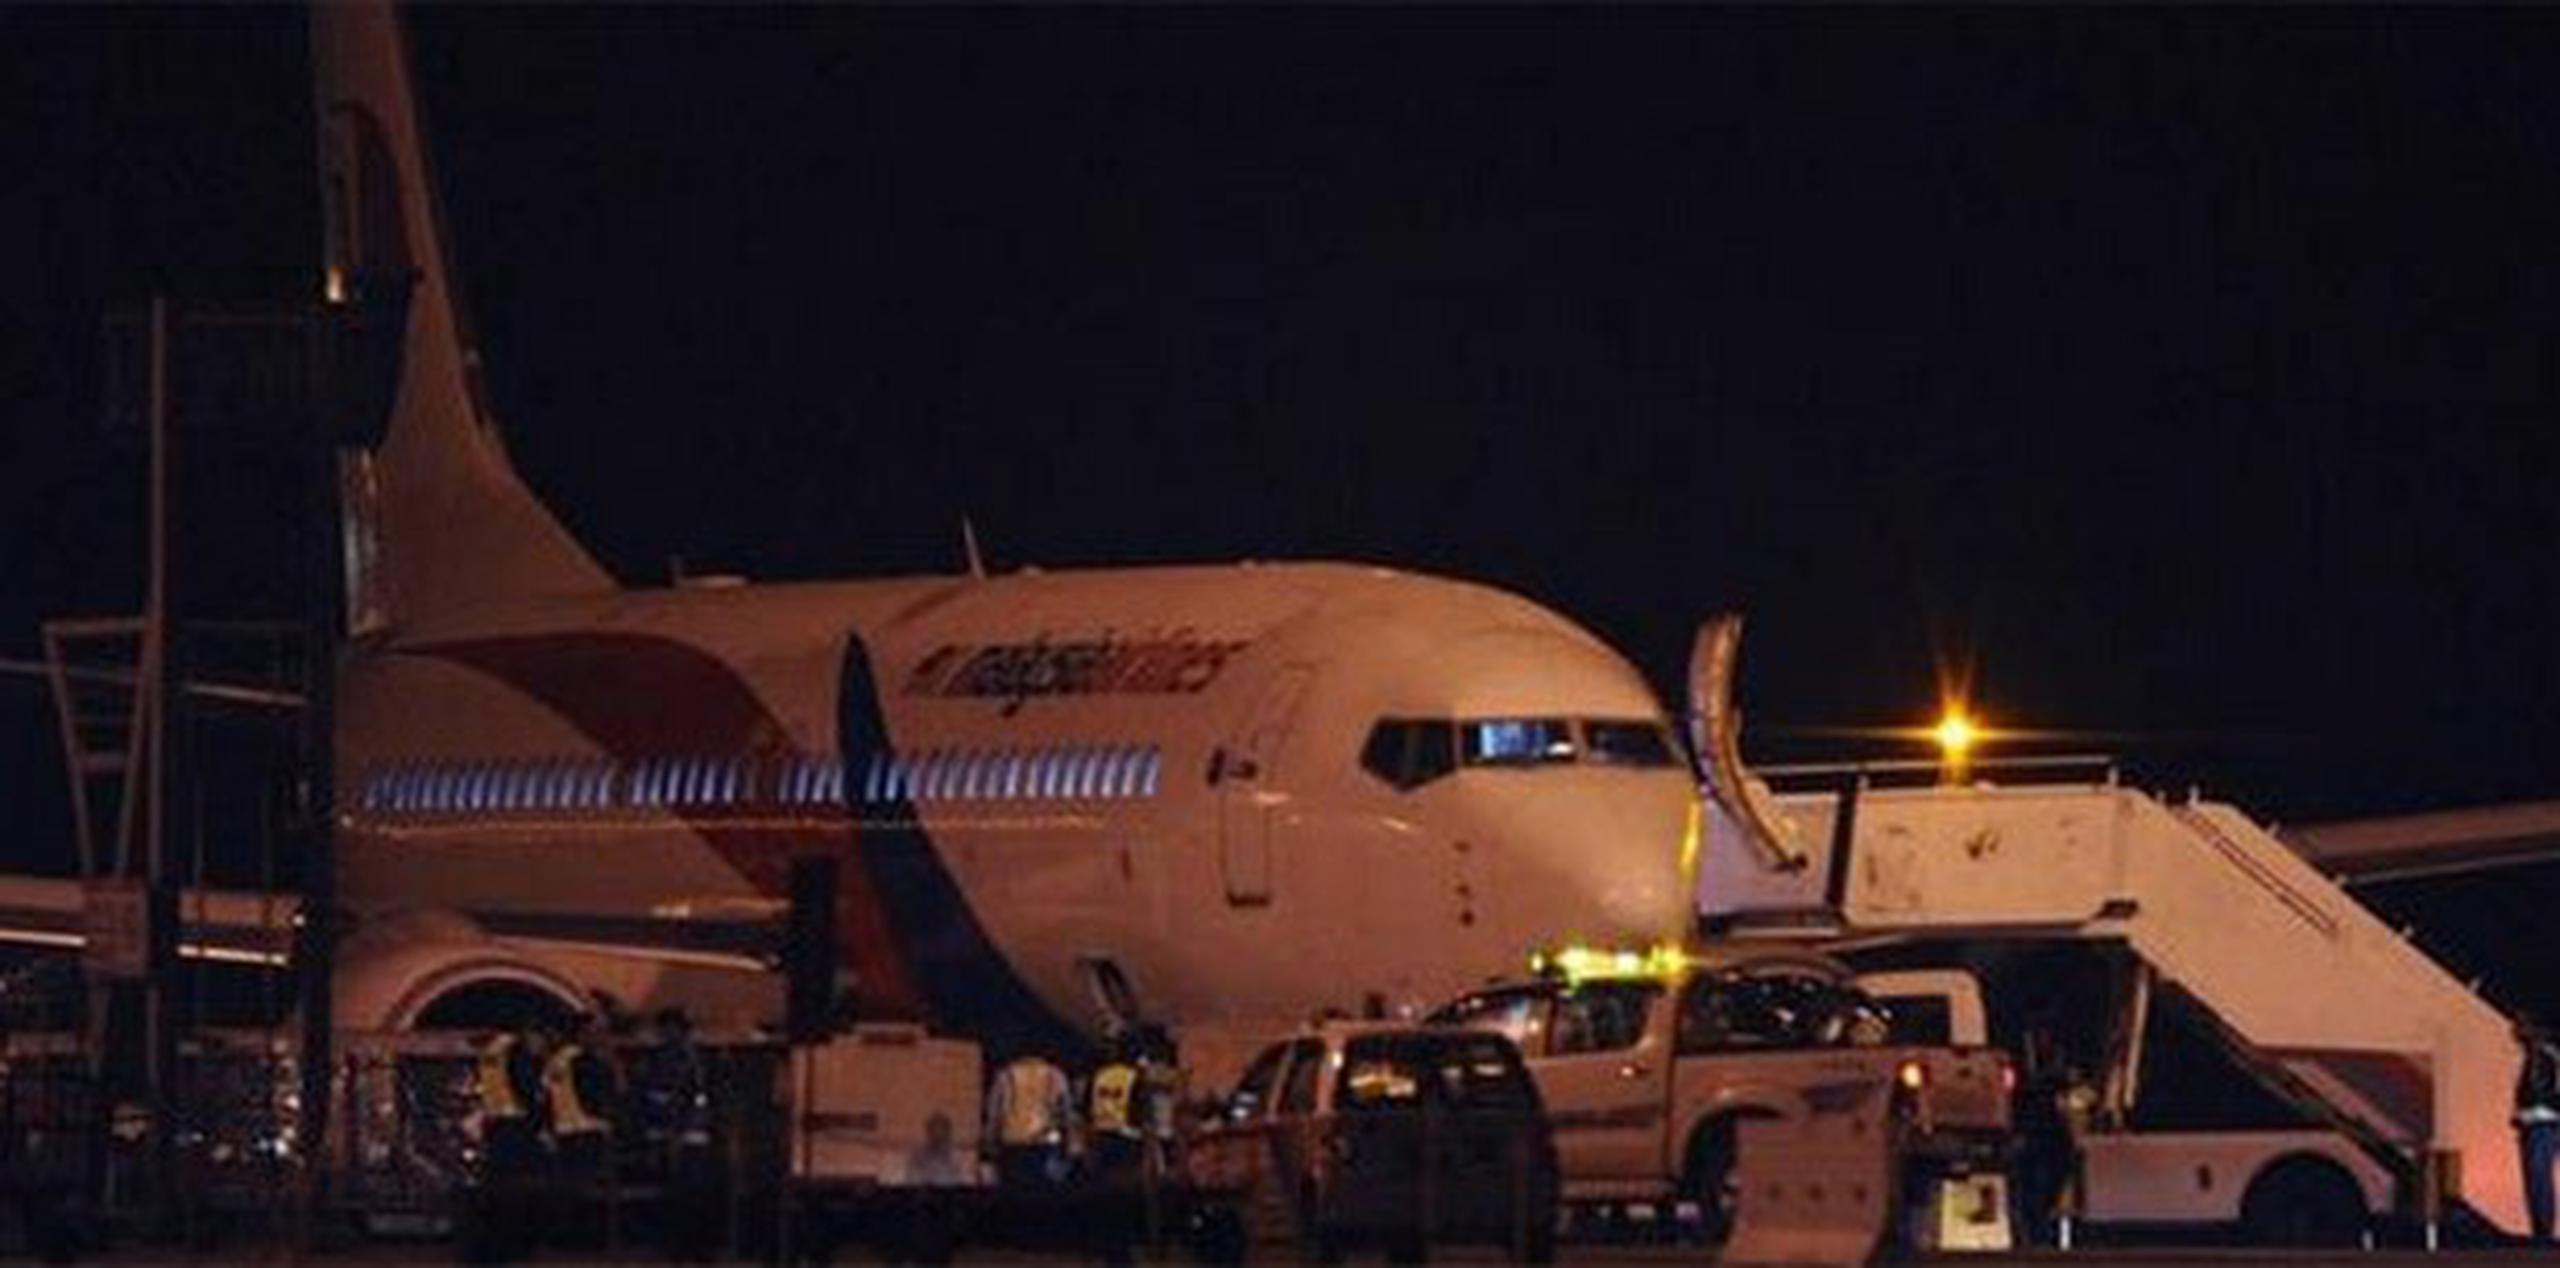 El avión de Malaysia Airlines despegó de Kuala Lumpur en la madrugada del 8 de marzo con 239 personas a bordo y desapareció a los 40 minutos. (Archivo)